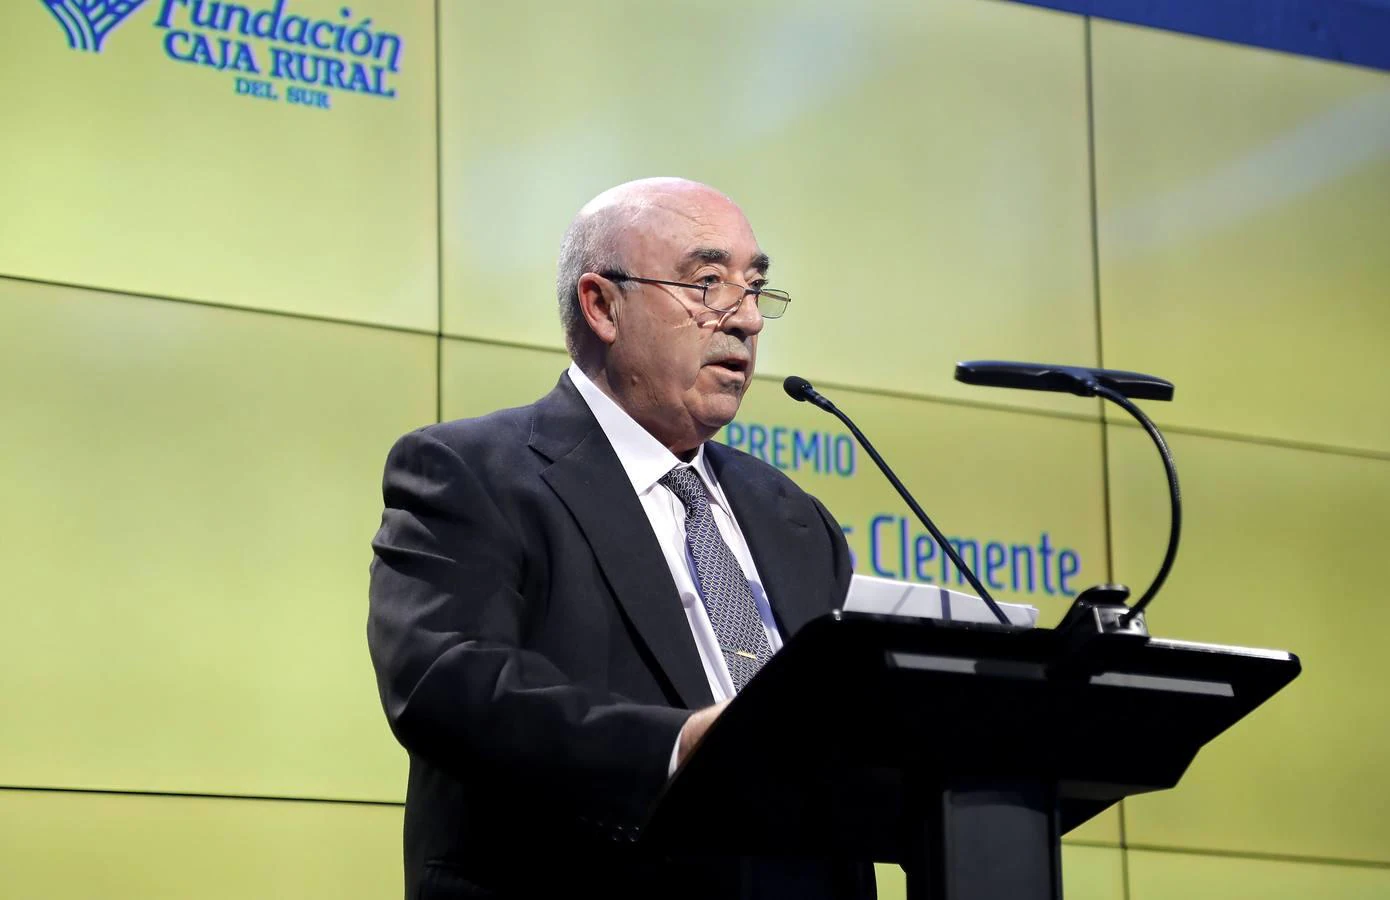 El premiado, Francisco Morales, en su discurso durante el acto